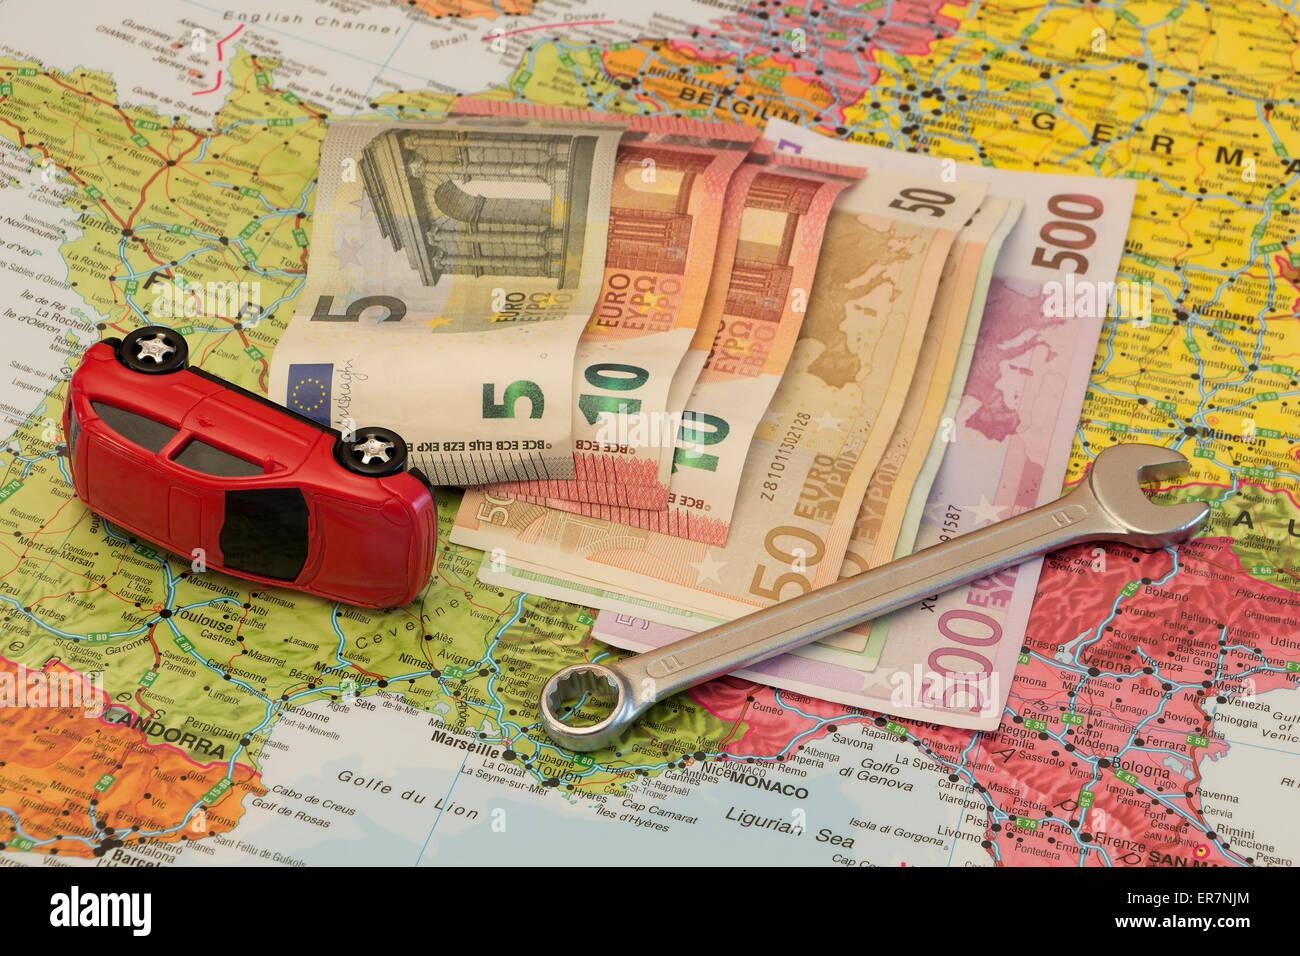 Mapa de Europa, rotas de los coches y el dinero europeo. Concepto de coche de seguridad, viajando por Europa y los seguros. Foto de stock